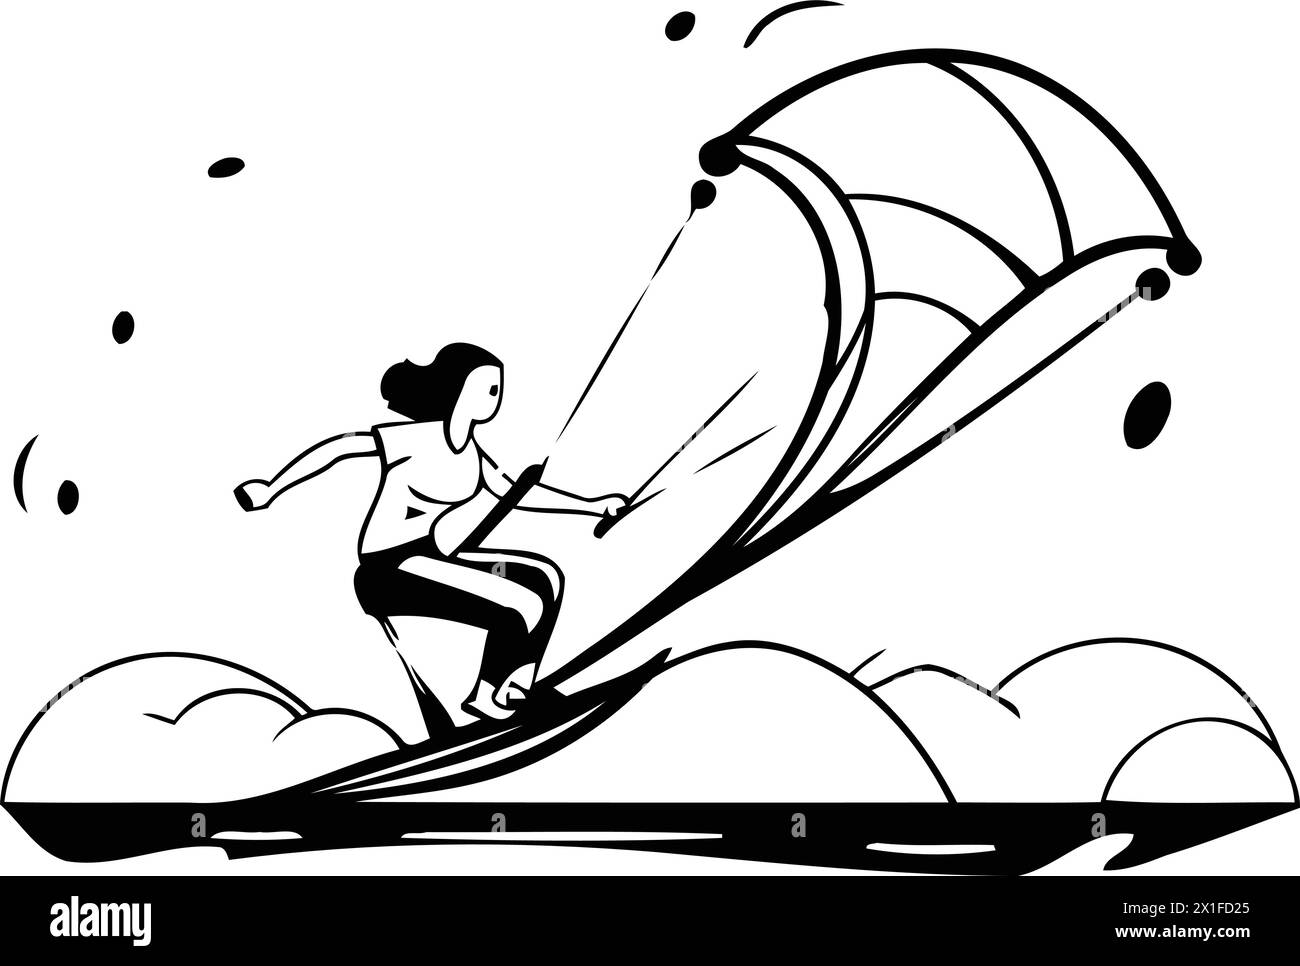 Illustration vectorielle de sport de kitesurf. Homme chevauchant un cerf-volant sur les vagues Illustration de Vecteur